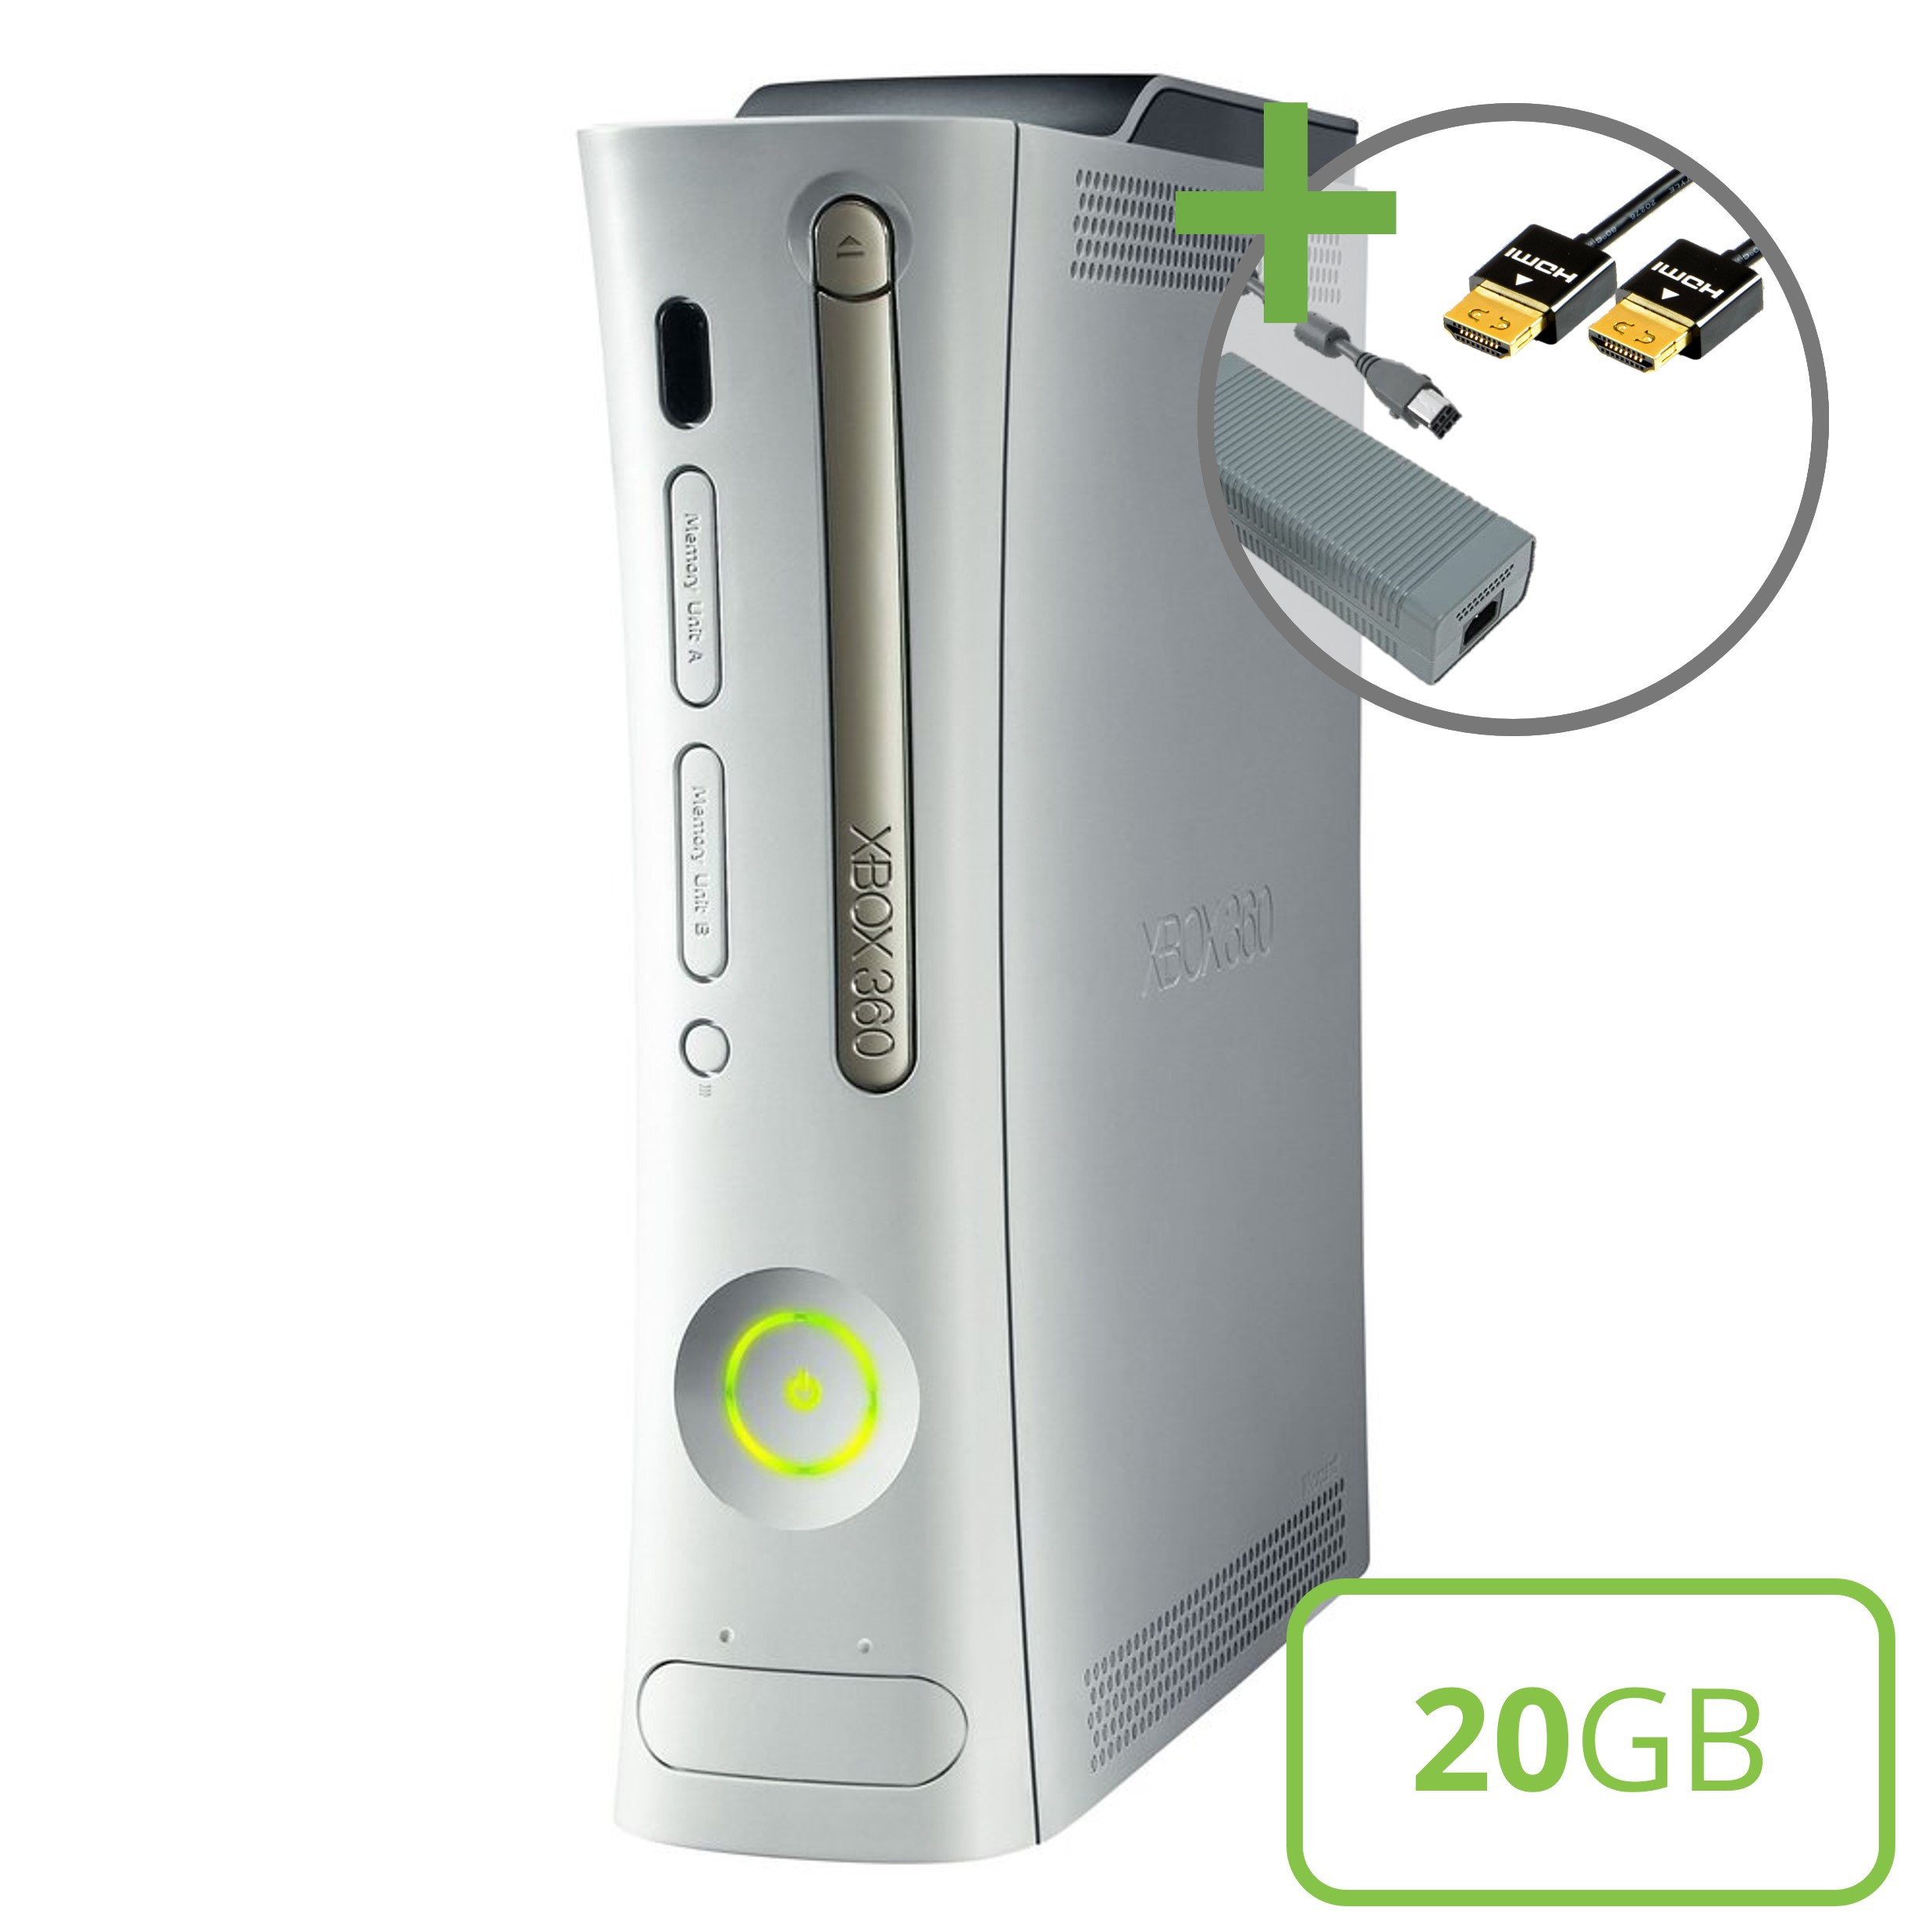 Microsoft Xbox 360 Premium Console (HDMI) - 20GB - Xbox 360 Hardware